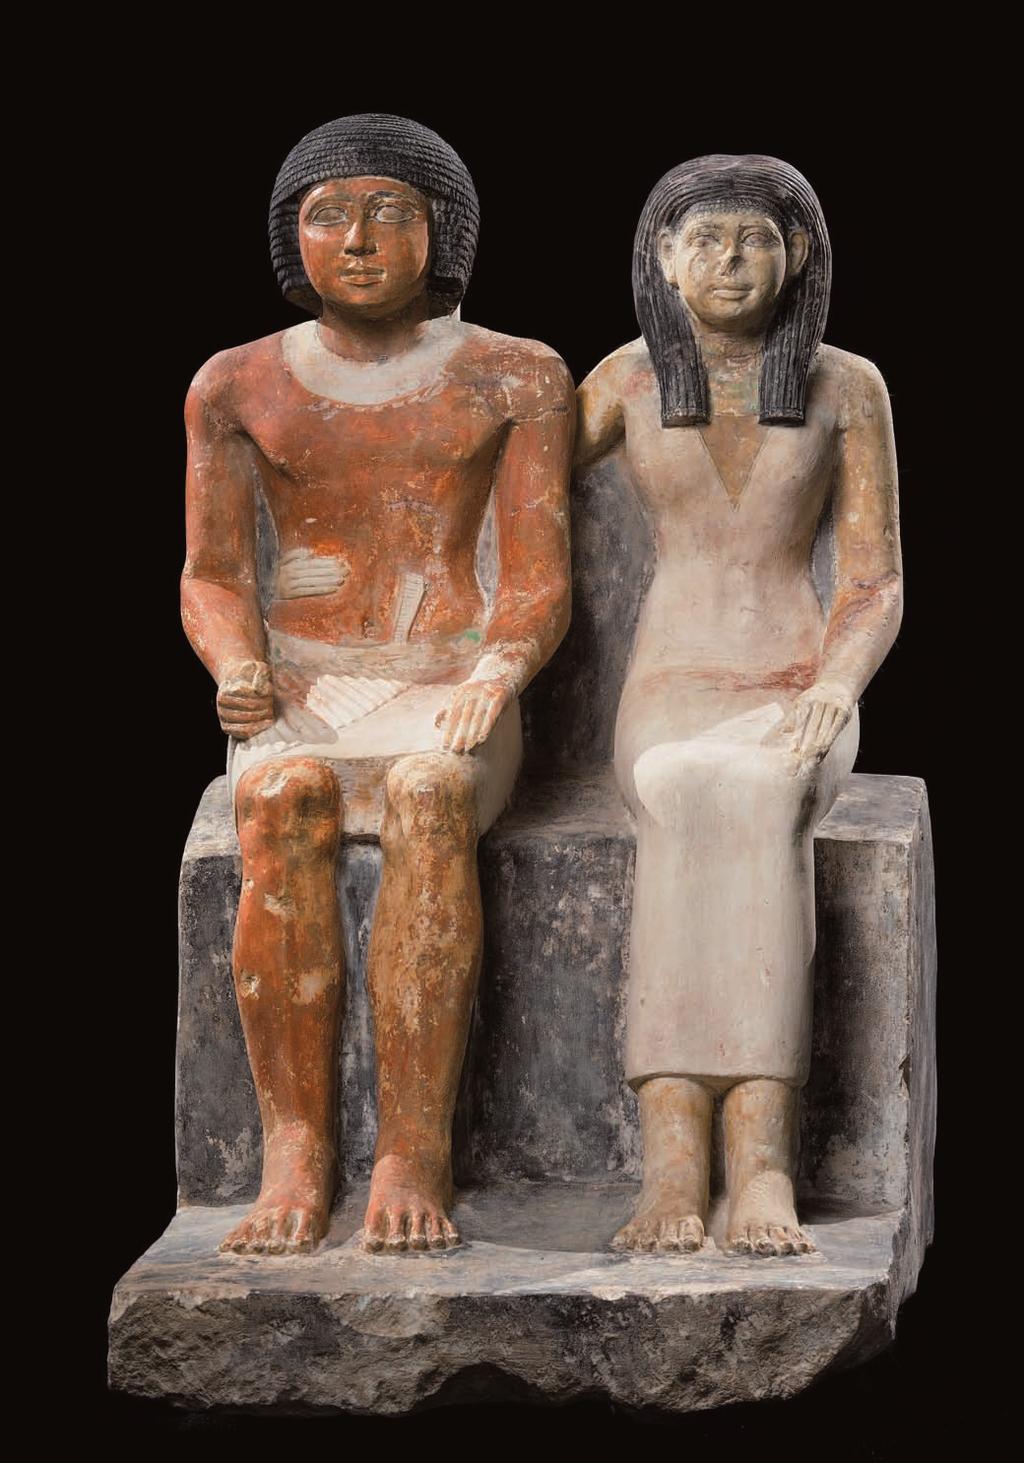 Socha zachycující manželský pár, nejspíše majitele hrobky